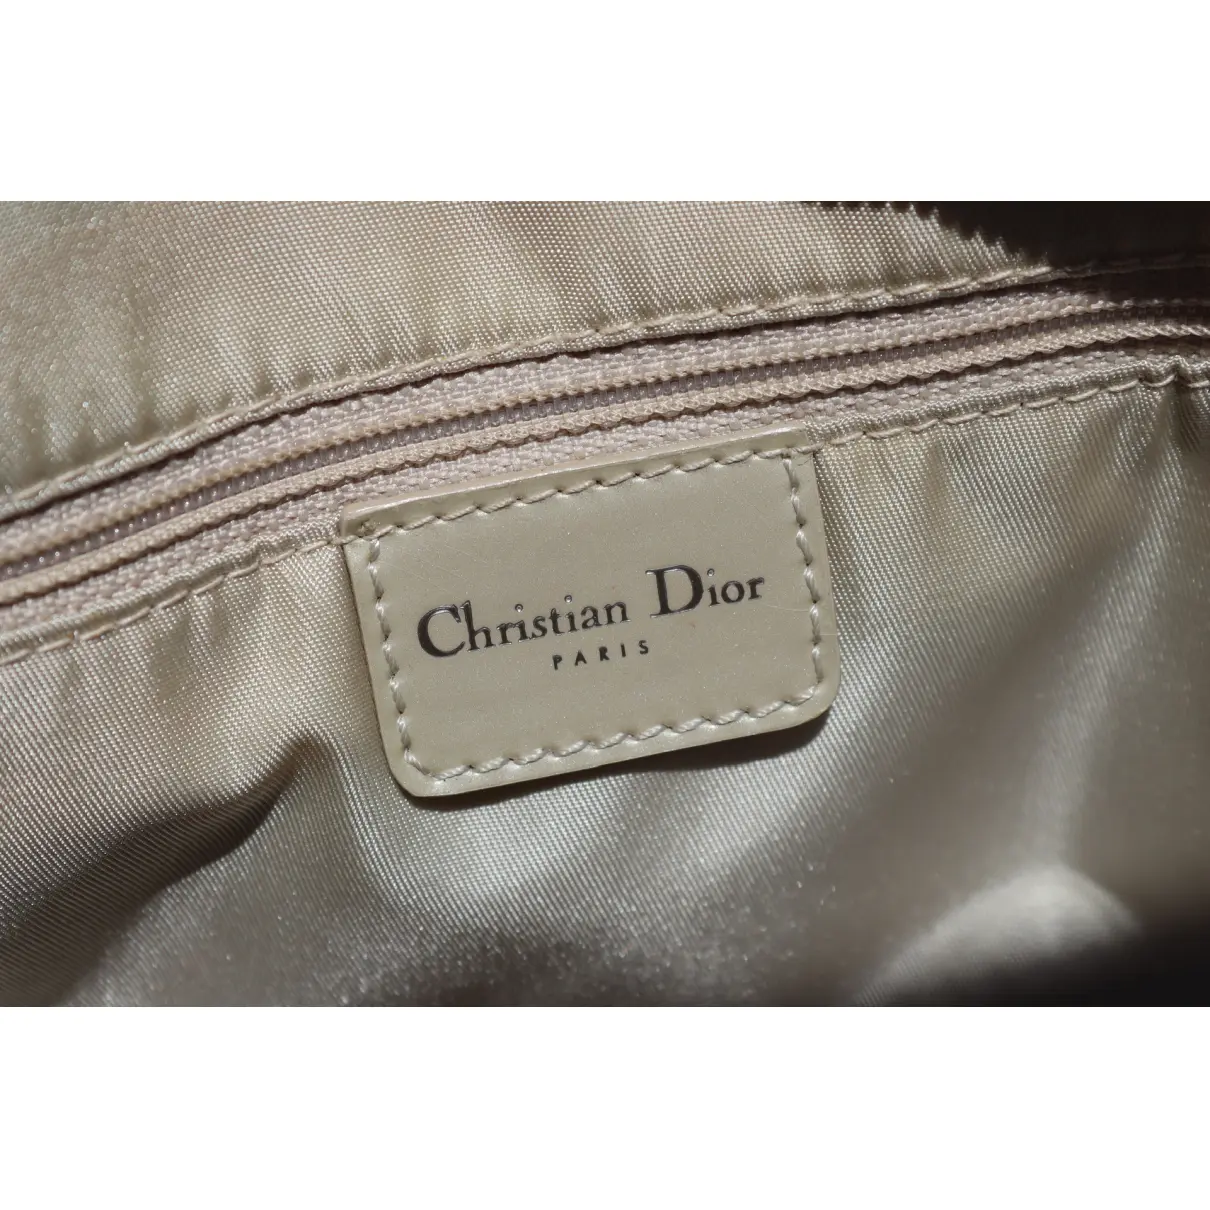 Saddle Bowler cloth bag Dior - Vintage